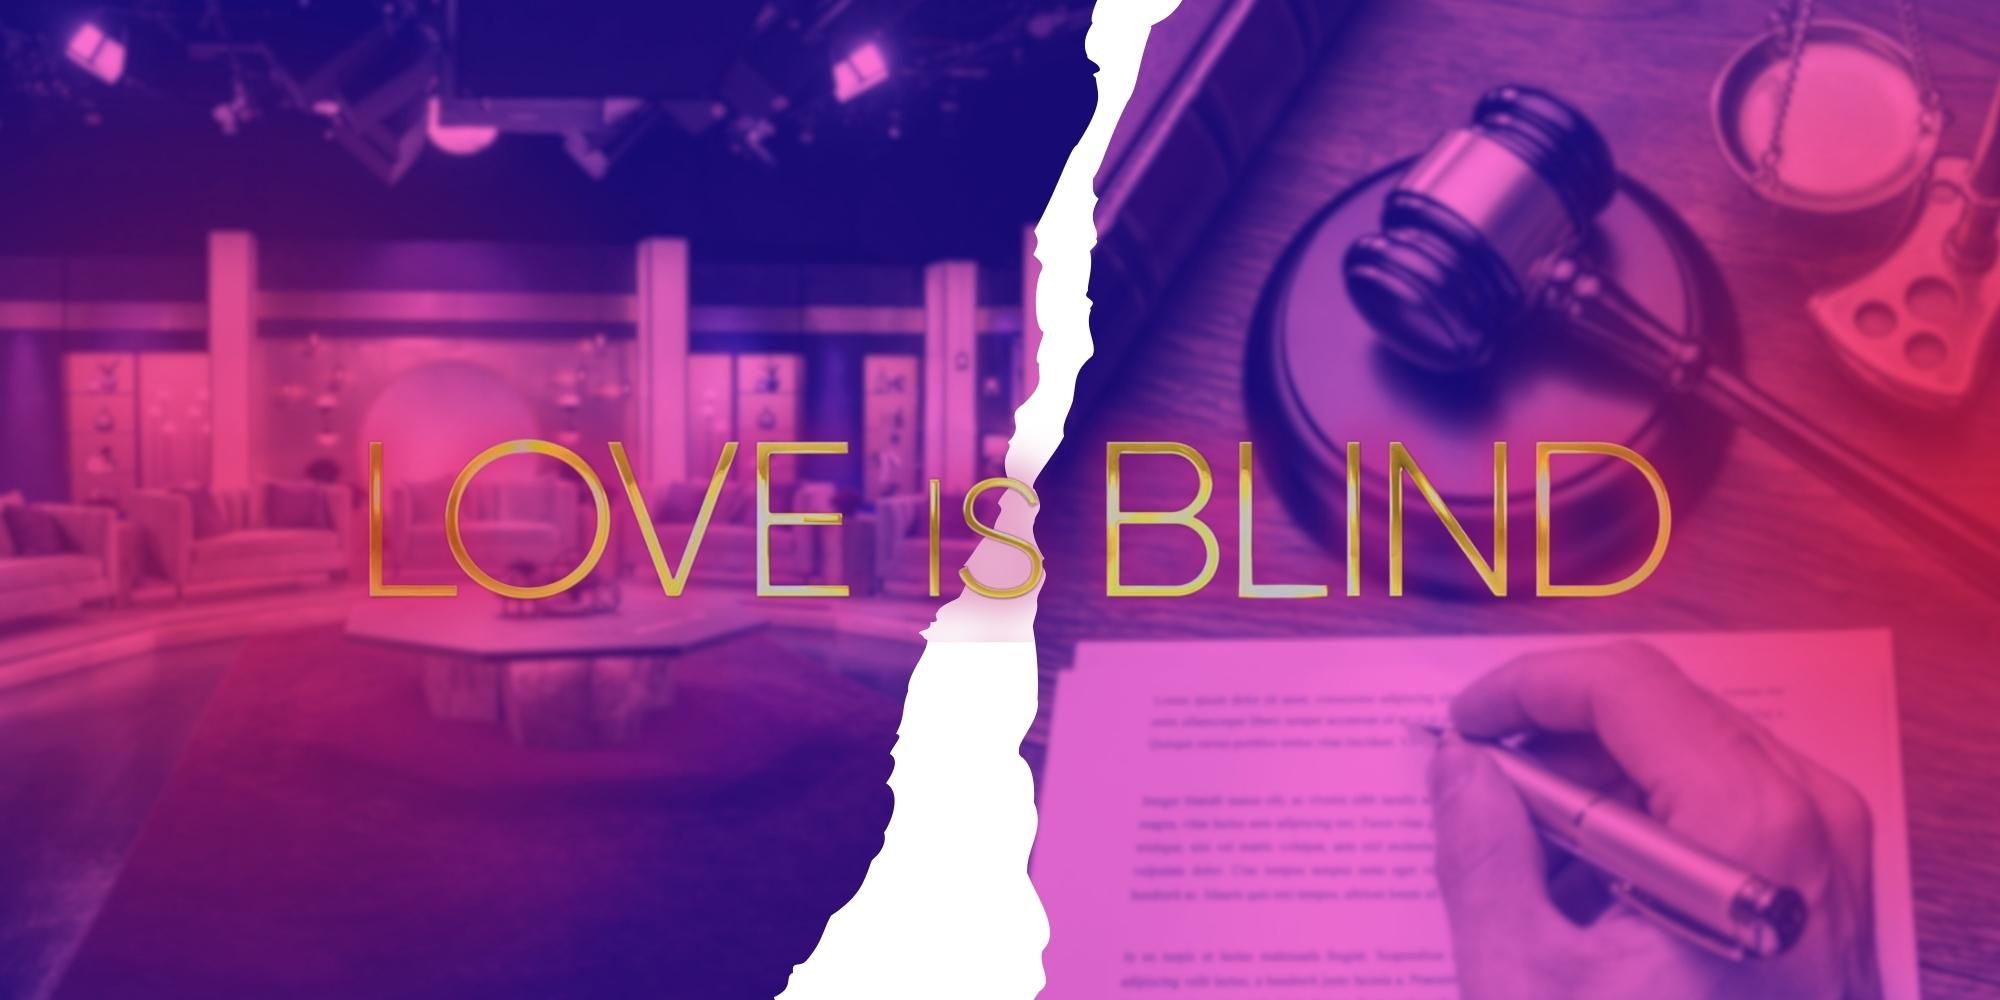 Renee Poche de la temporada 5 de Love Is Blind presenta una demanda explosiva por una supuesta experiencia "traumática"